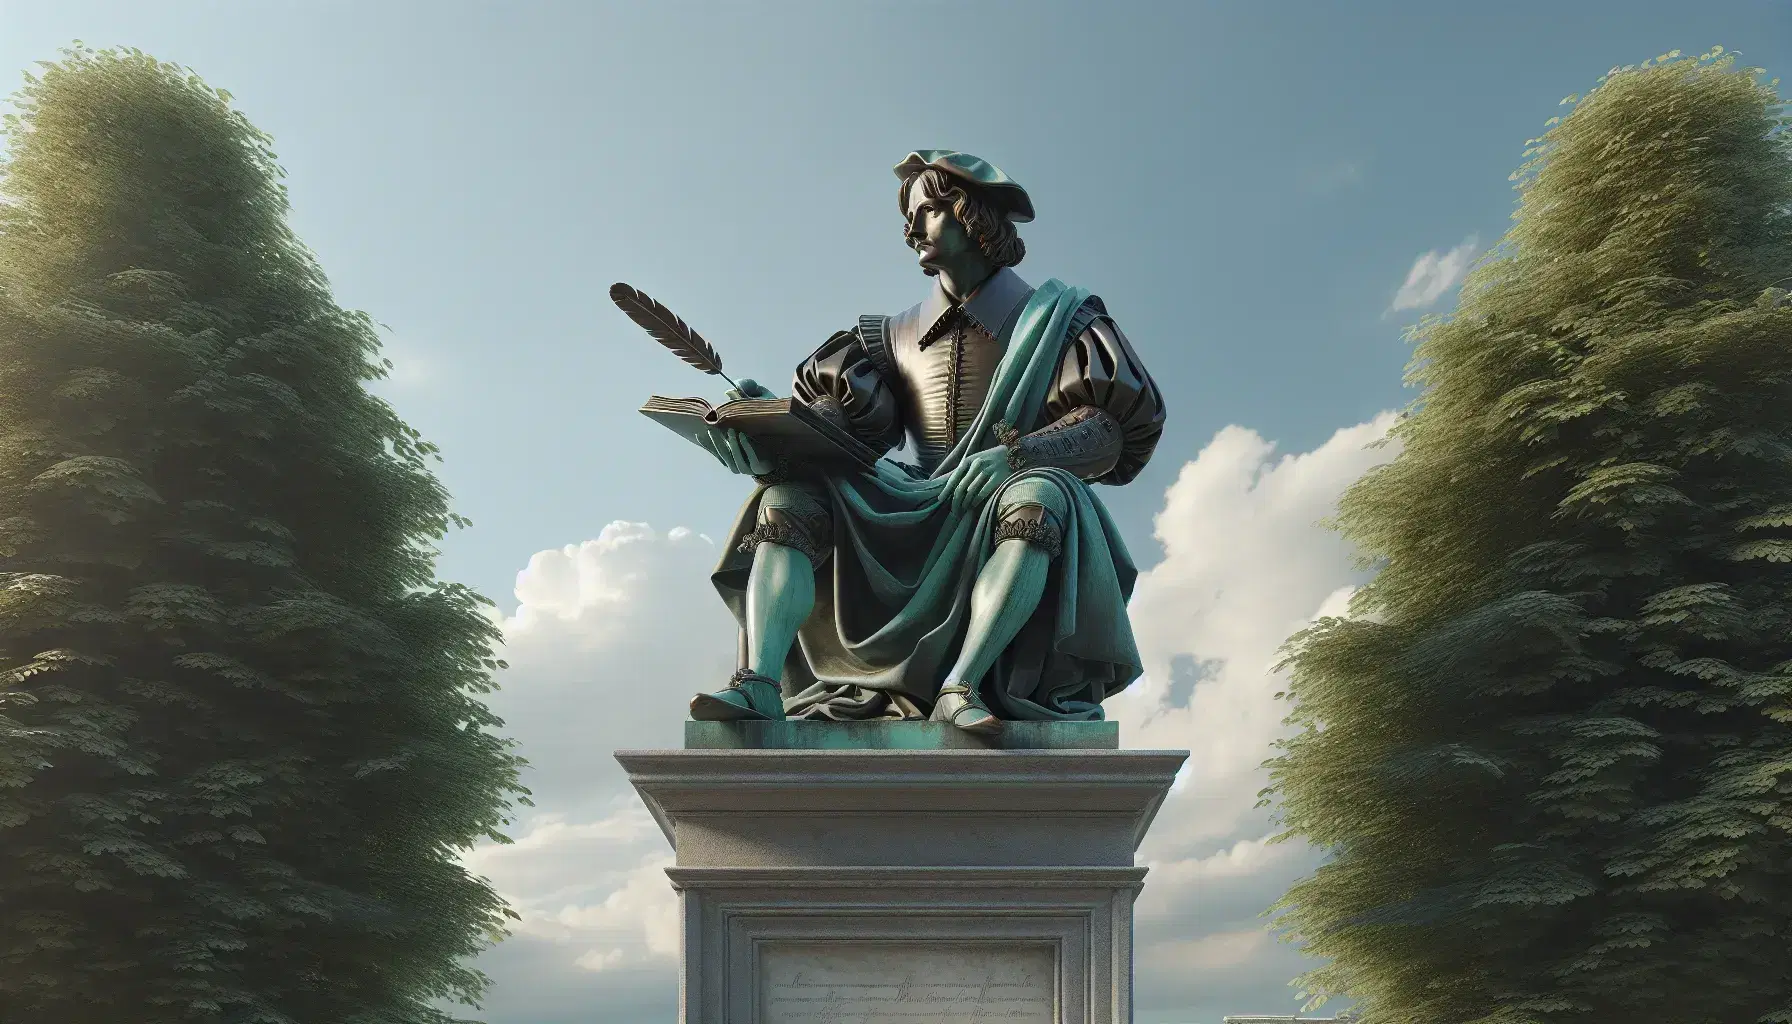 Estatua de bronce de hombre del siglo XVI en pose pensativa con pluma y libro abierto, sobre pedestal de piedra, entre árboles verdes bajo cielo azul con nubes.